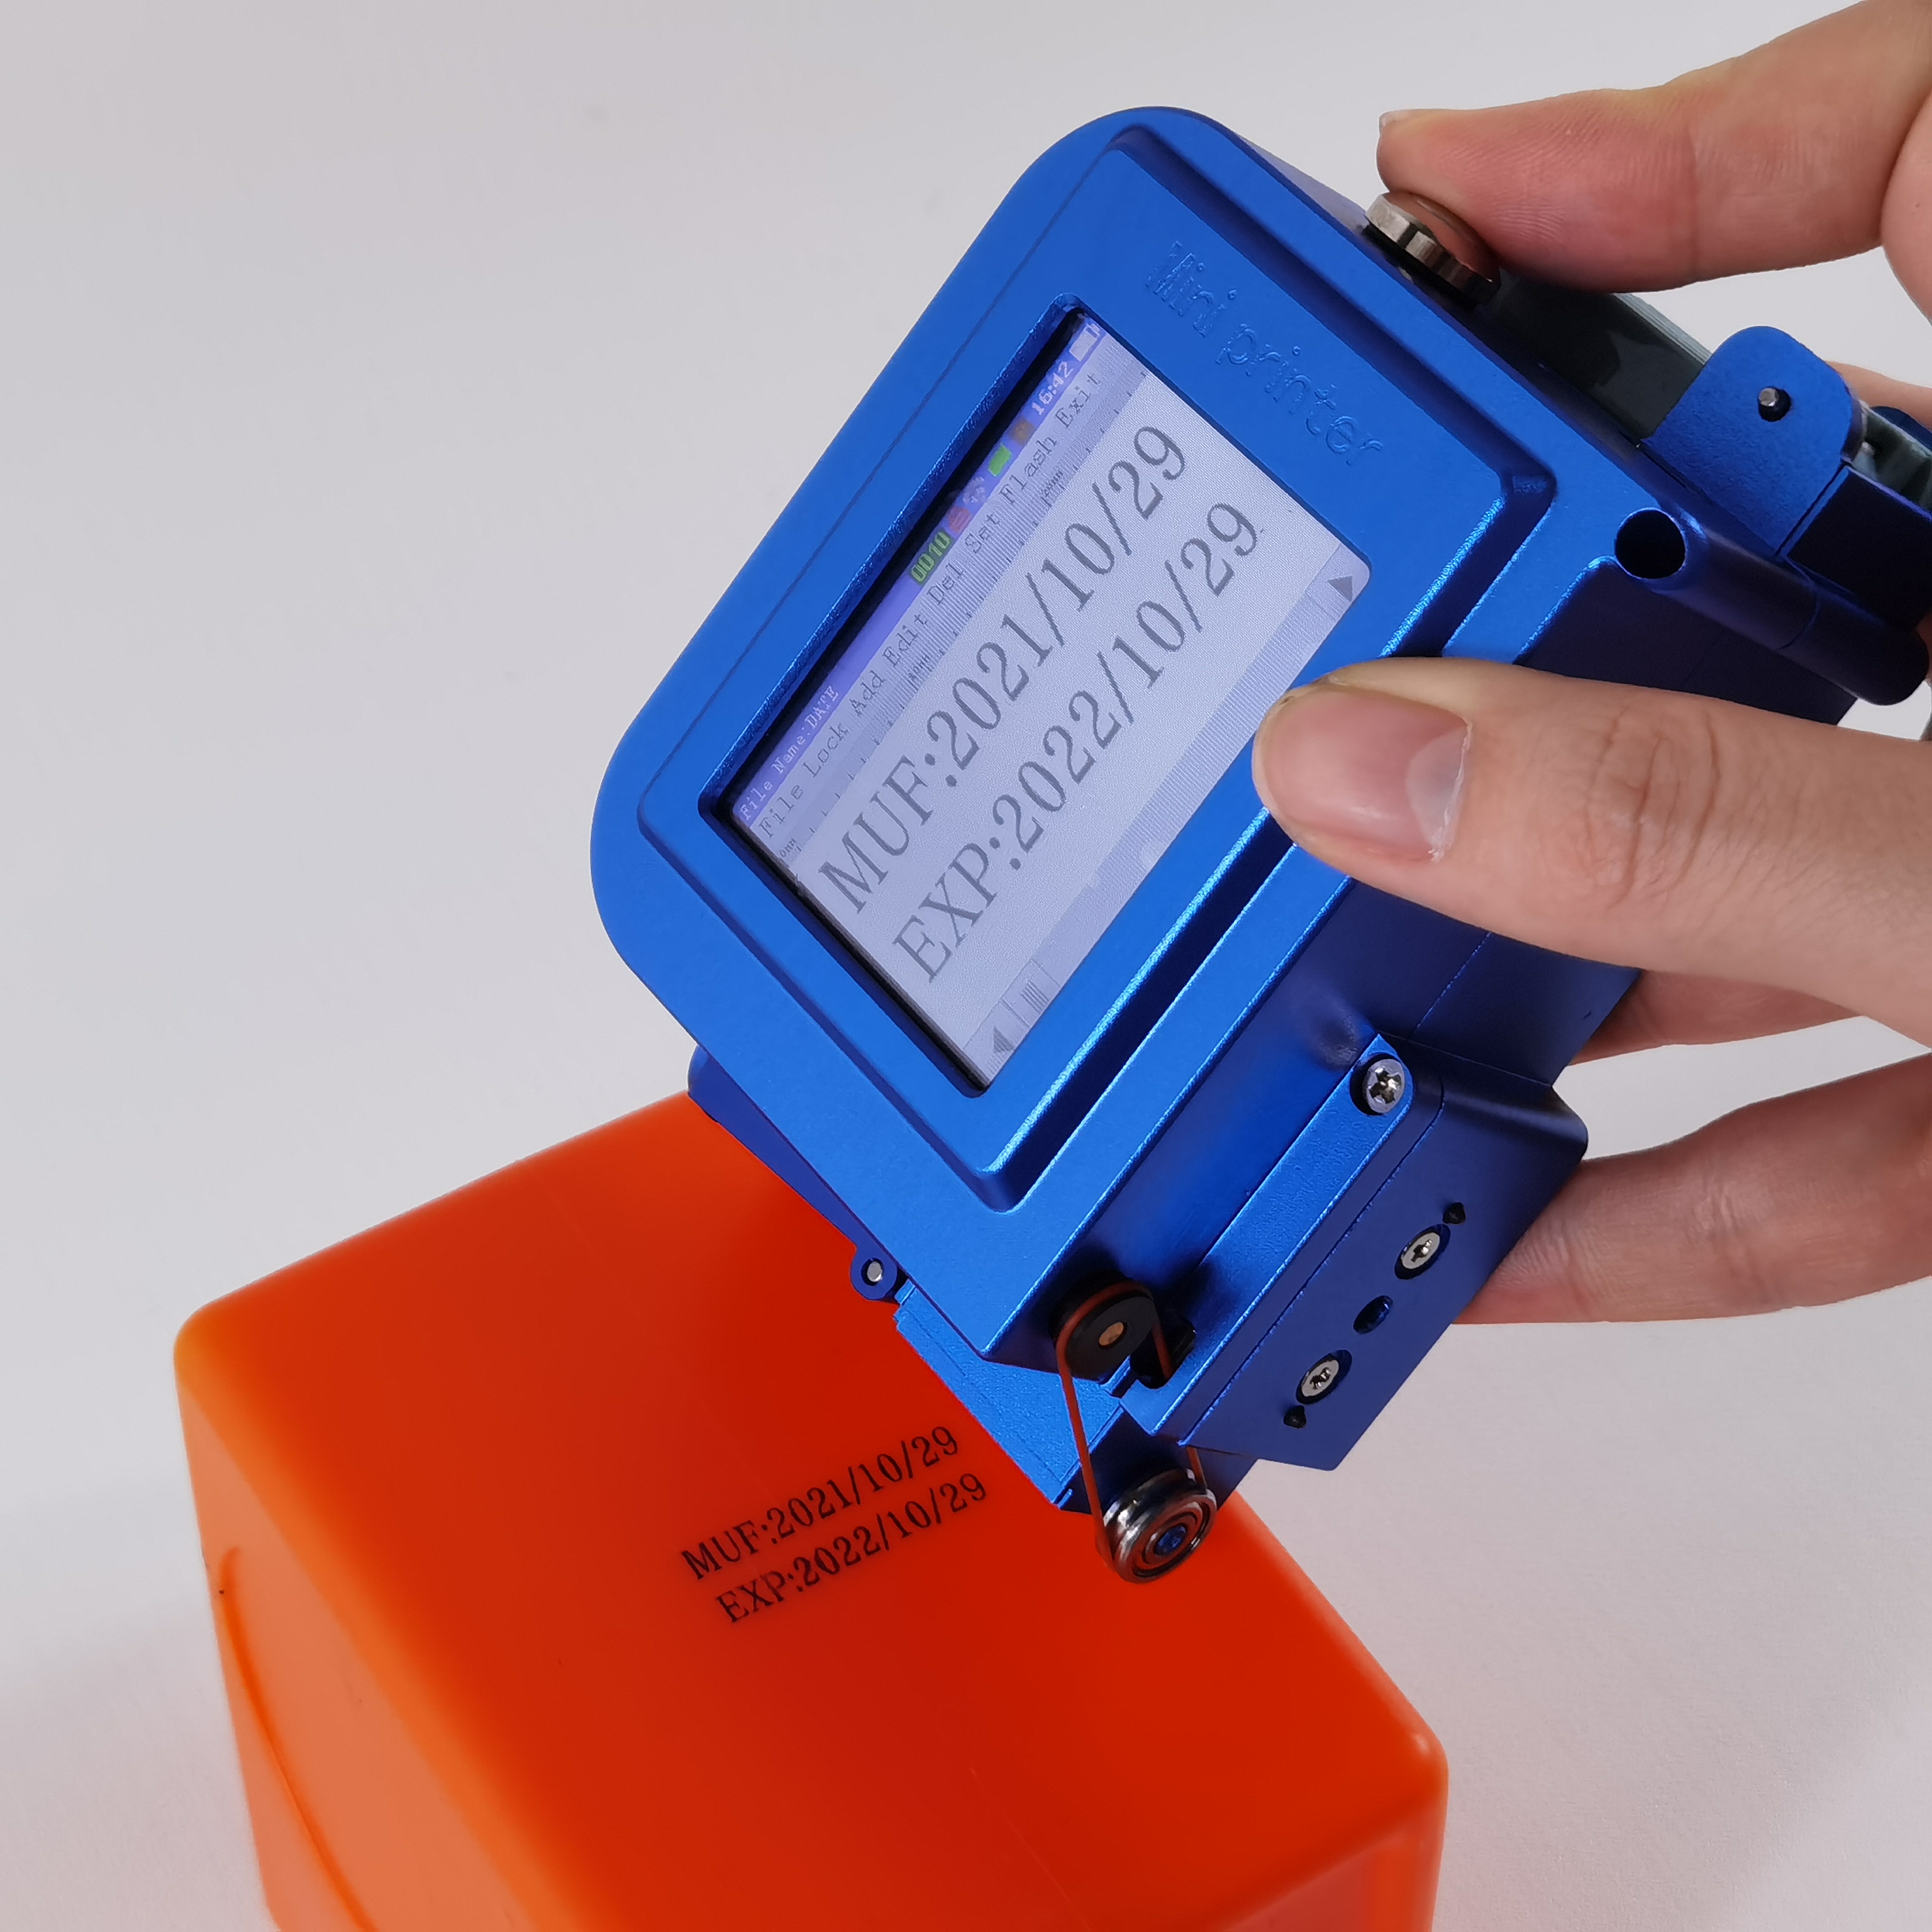 Mini Imprimante Portable - Retours Gratuits Dans Les 90 Jours - Temu France